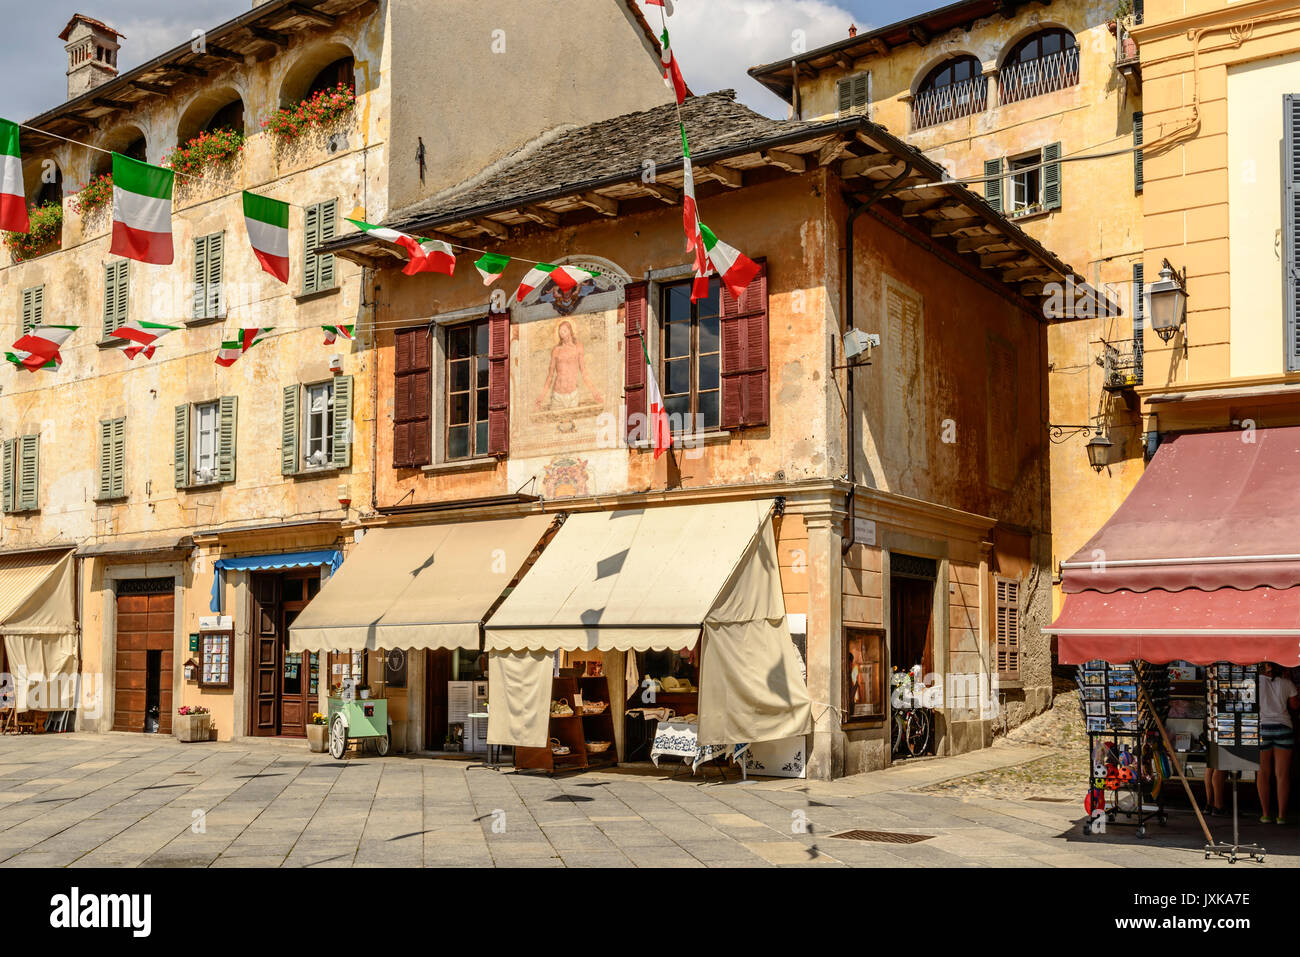 Il vecchio edificio pittoresco sulla piazza Motta a storico villaggio turistico, shot sulla luminosa giornata estiva a Orta San Giulio, Novara, Cusio, Italia Foto Stock